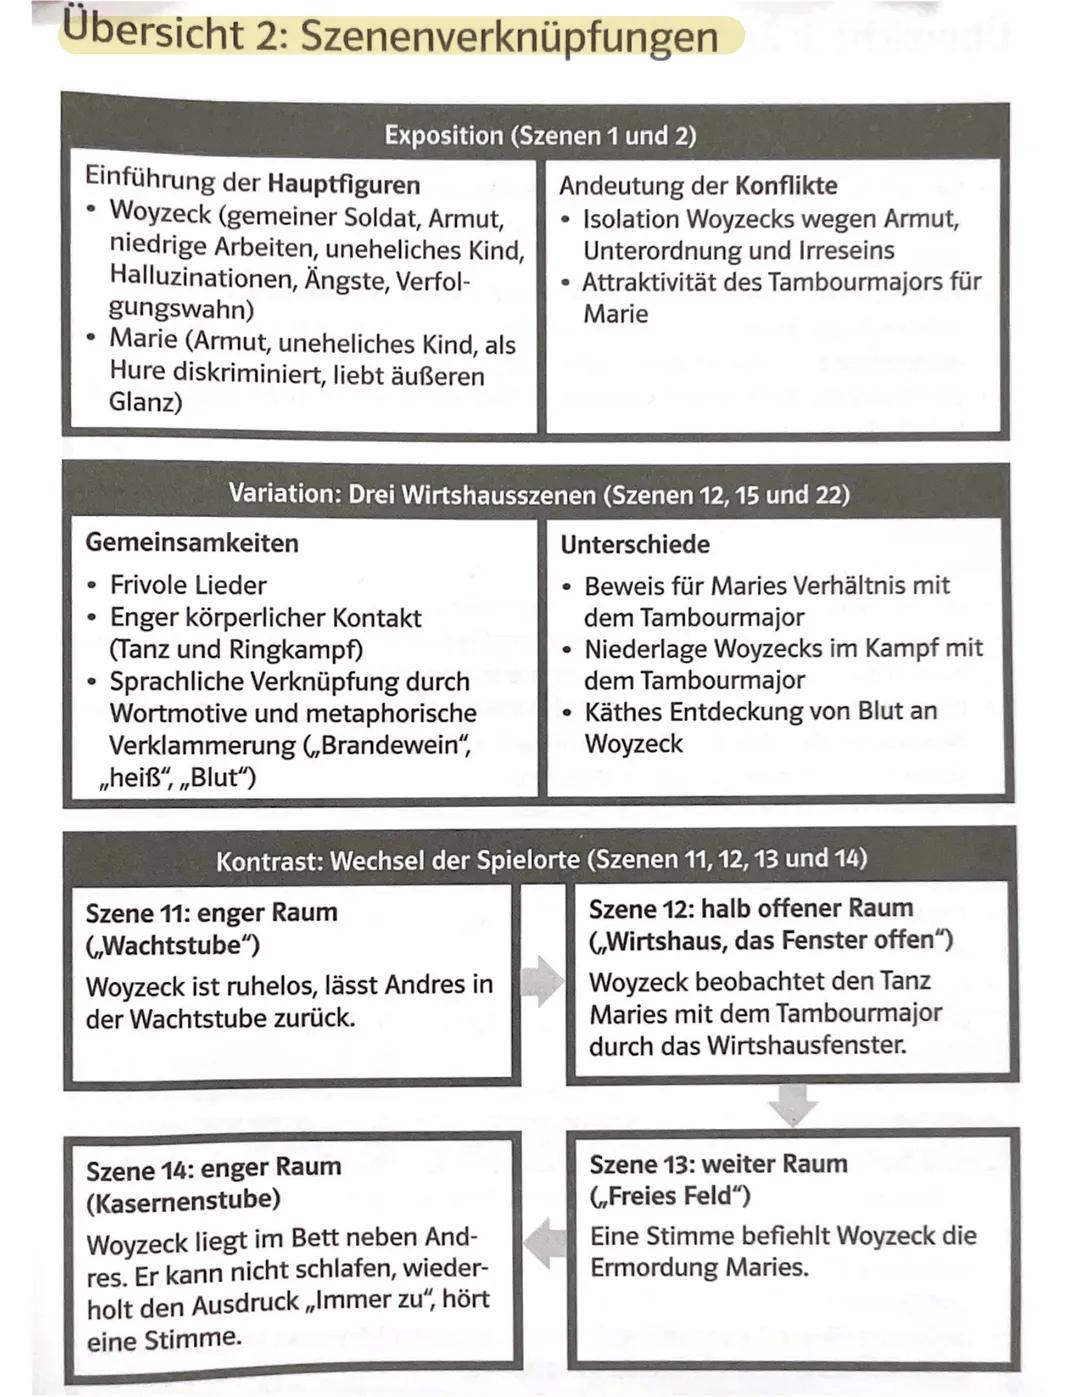 Georg Büchner
Woyzeck
Reclam XL Text und Kontext
Größeres Format
Neues Layout
Klimaneutral Inhalt 1
2
Literarische Erörterung, Georg Büchner